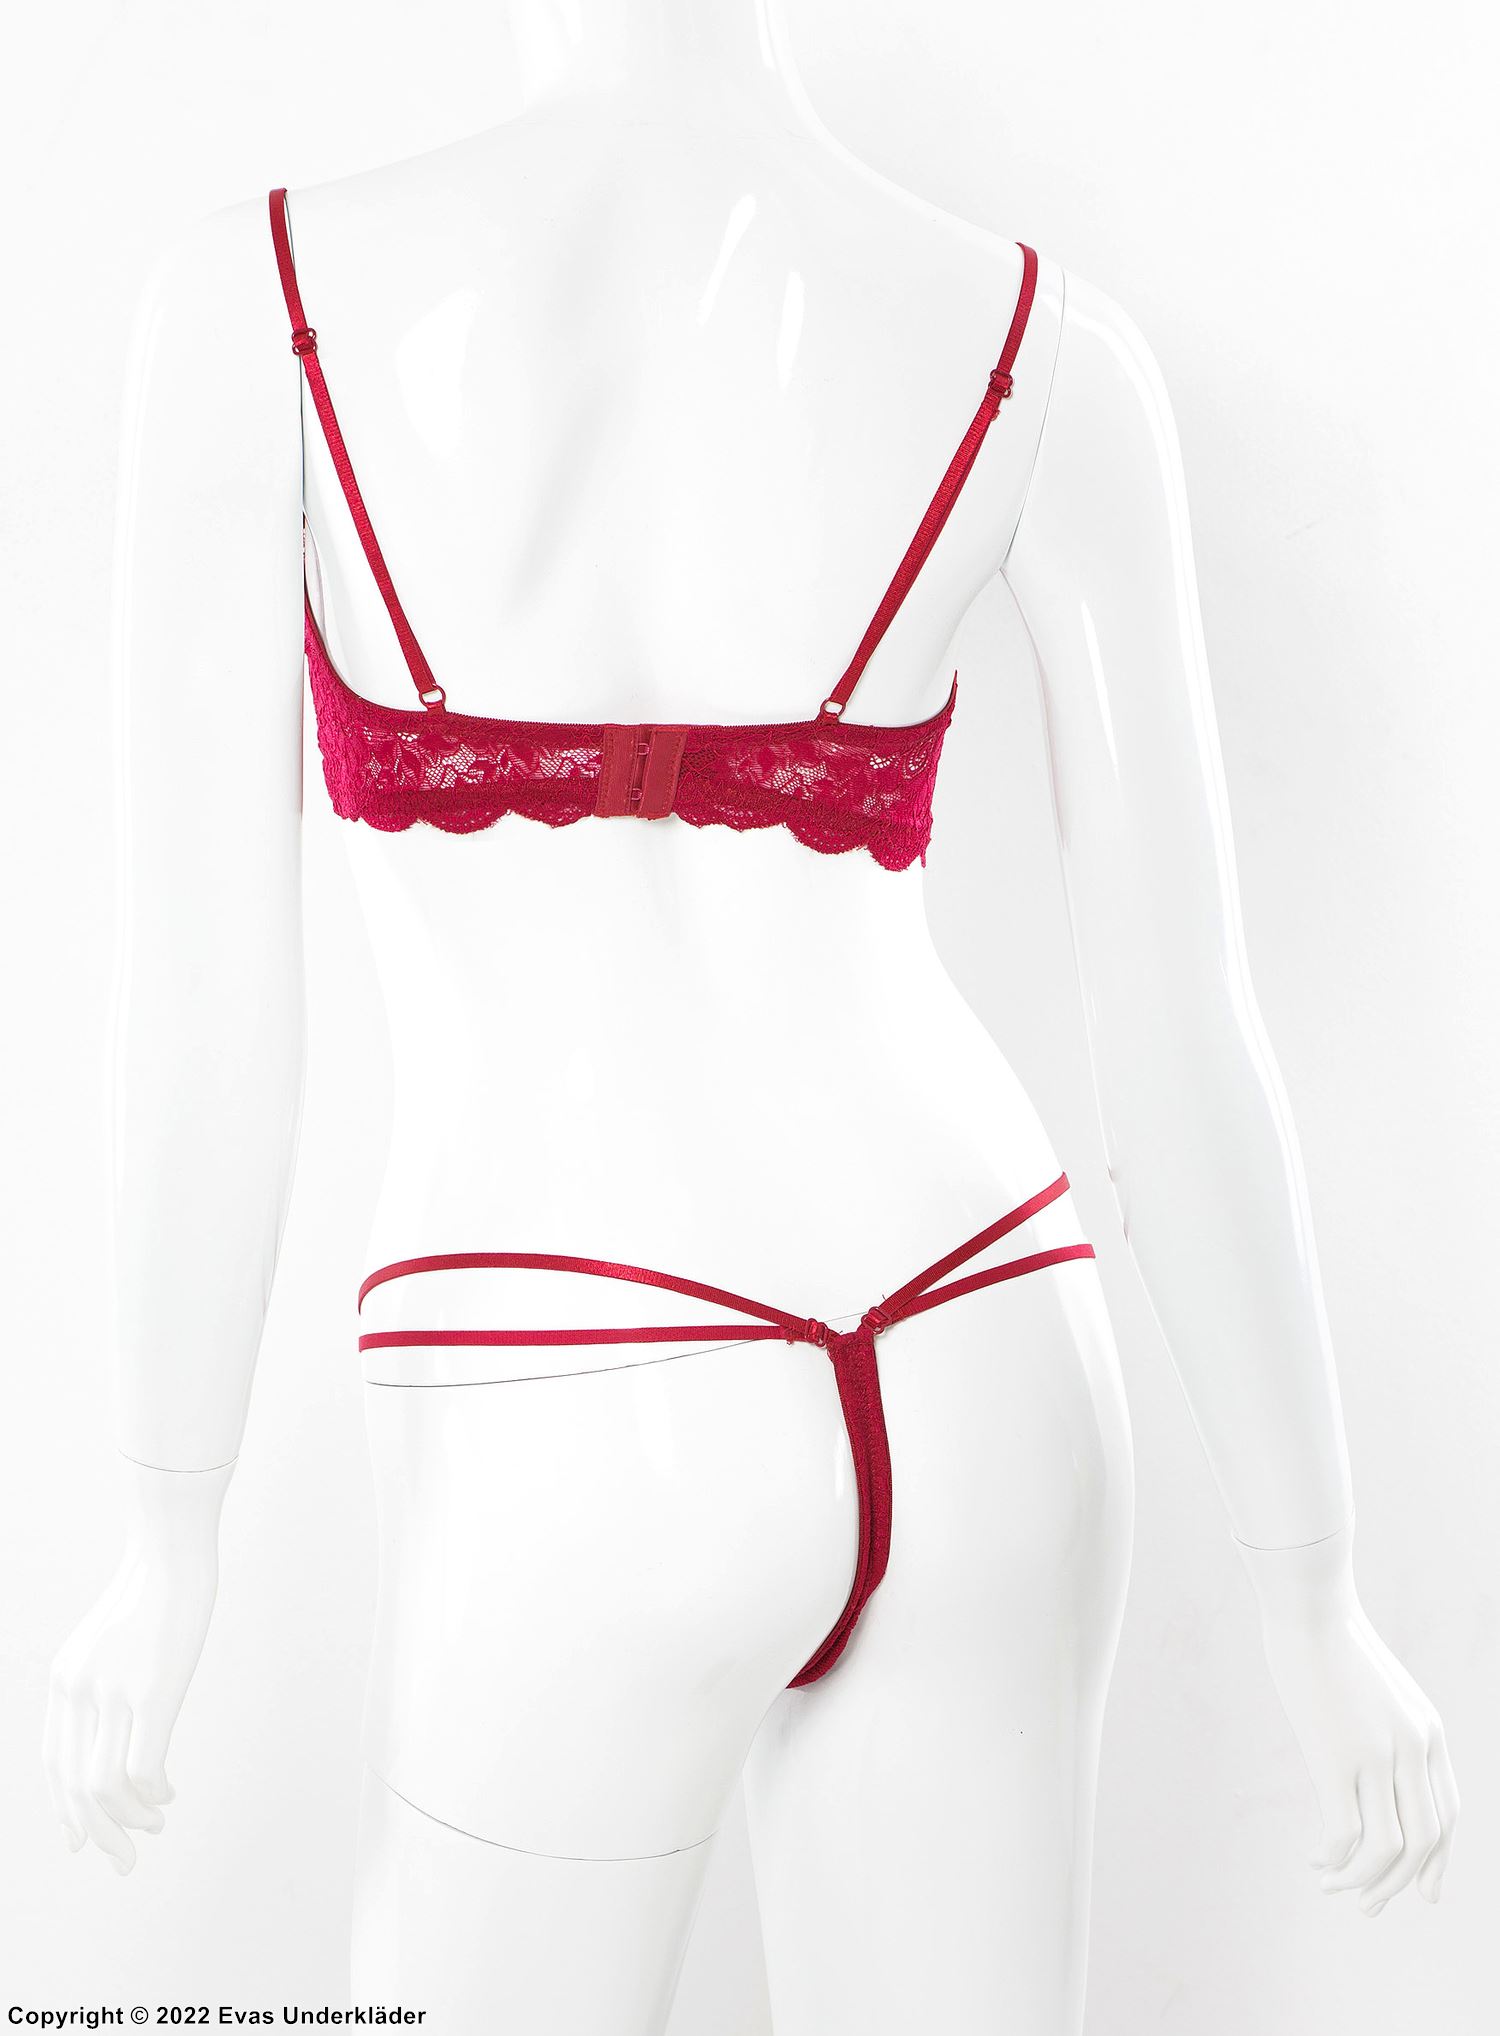 Seductive lingerie set, floral lace, garter belt, double straps